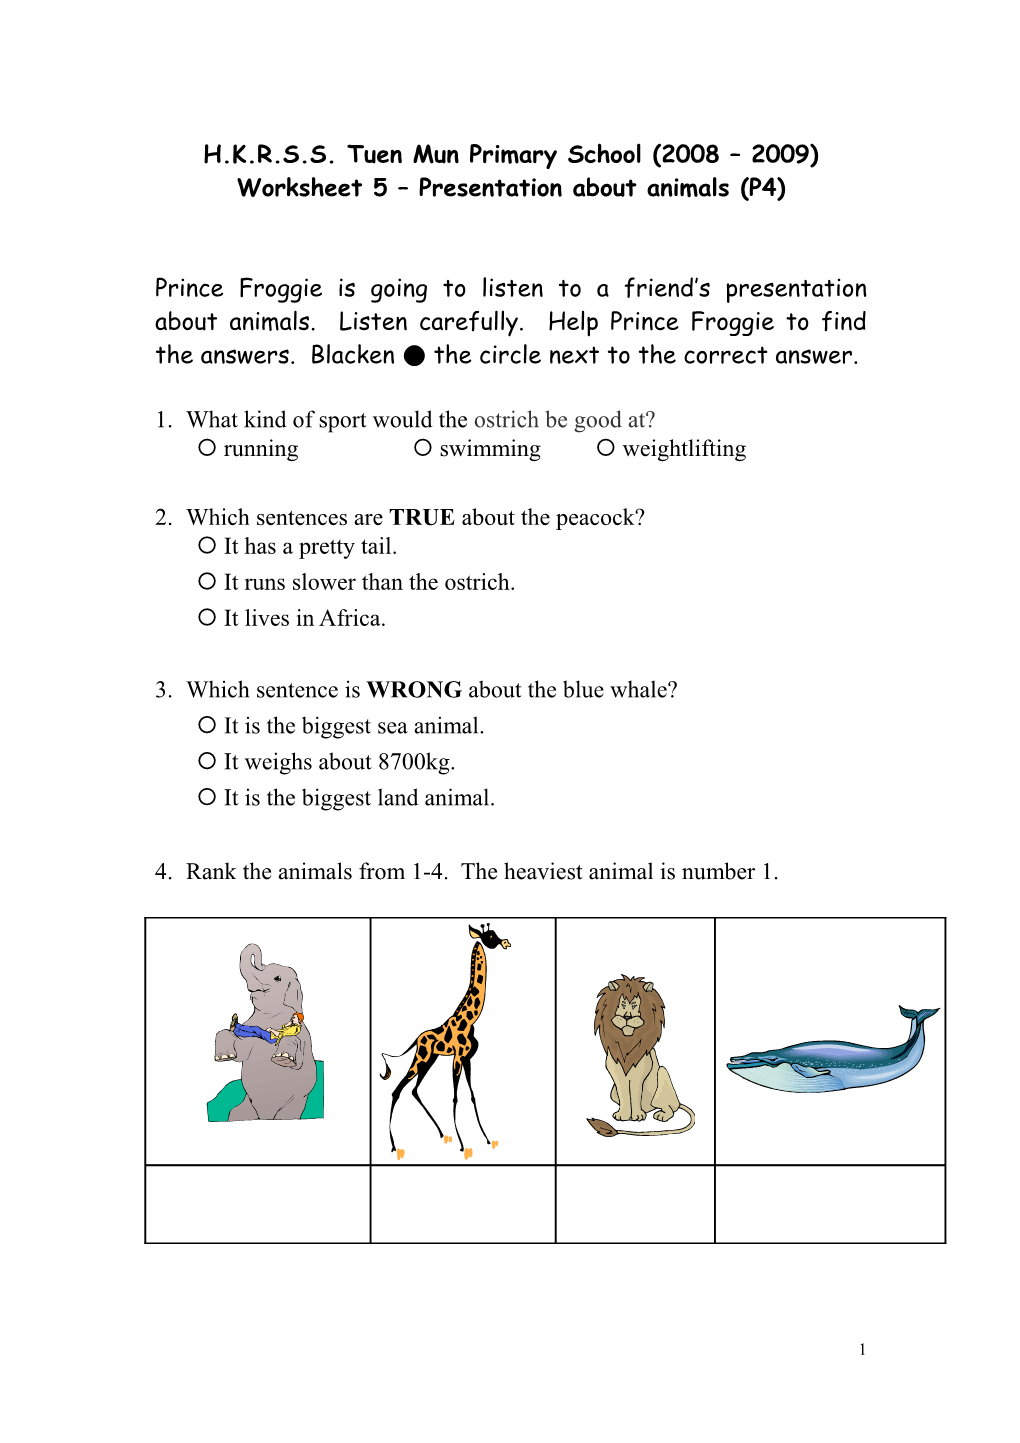 Worksheet 5 Presentation About Animals (P4)